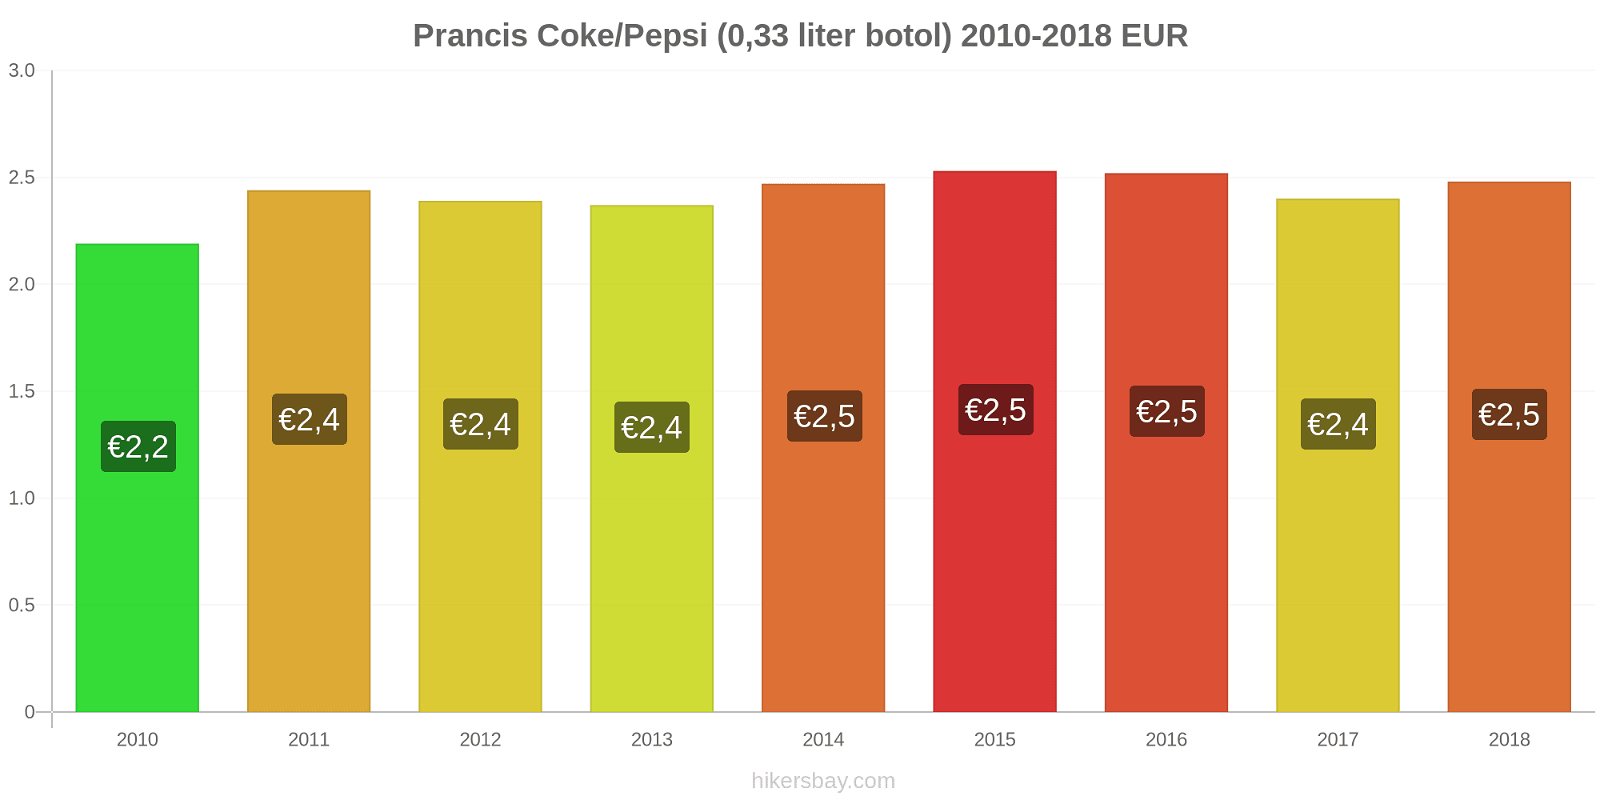 Prancis perubahan harga Coca-Cola/Pepsi (botol 0.33 liter) hikersbay.com